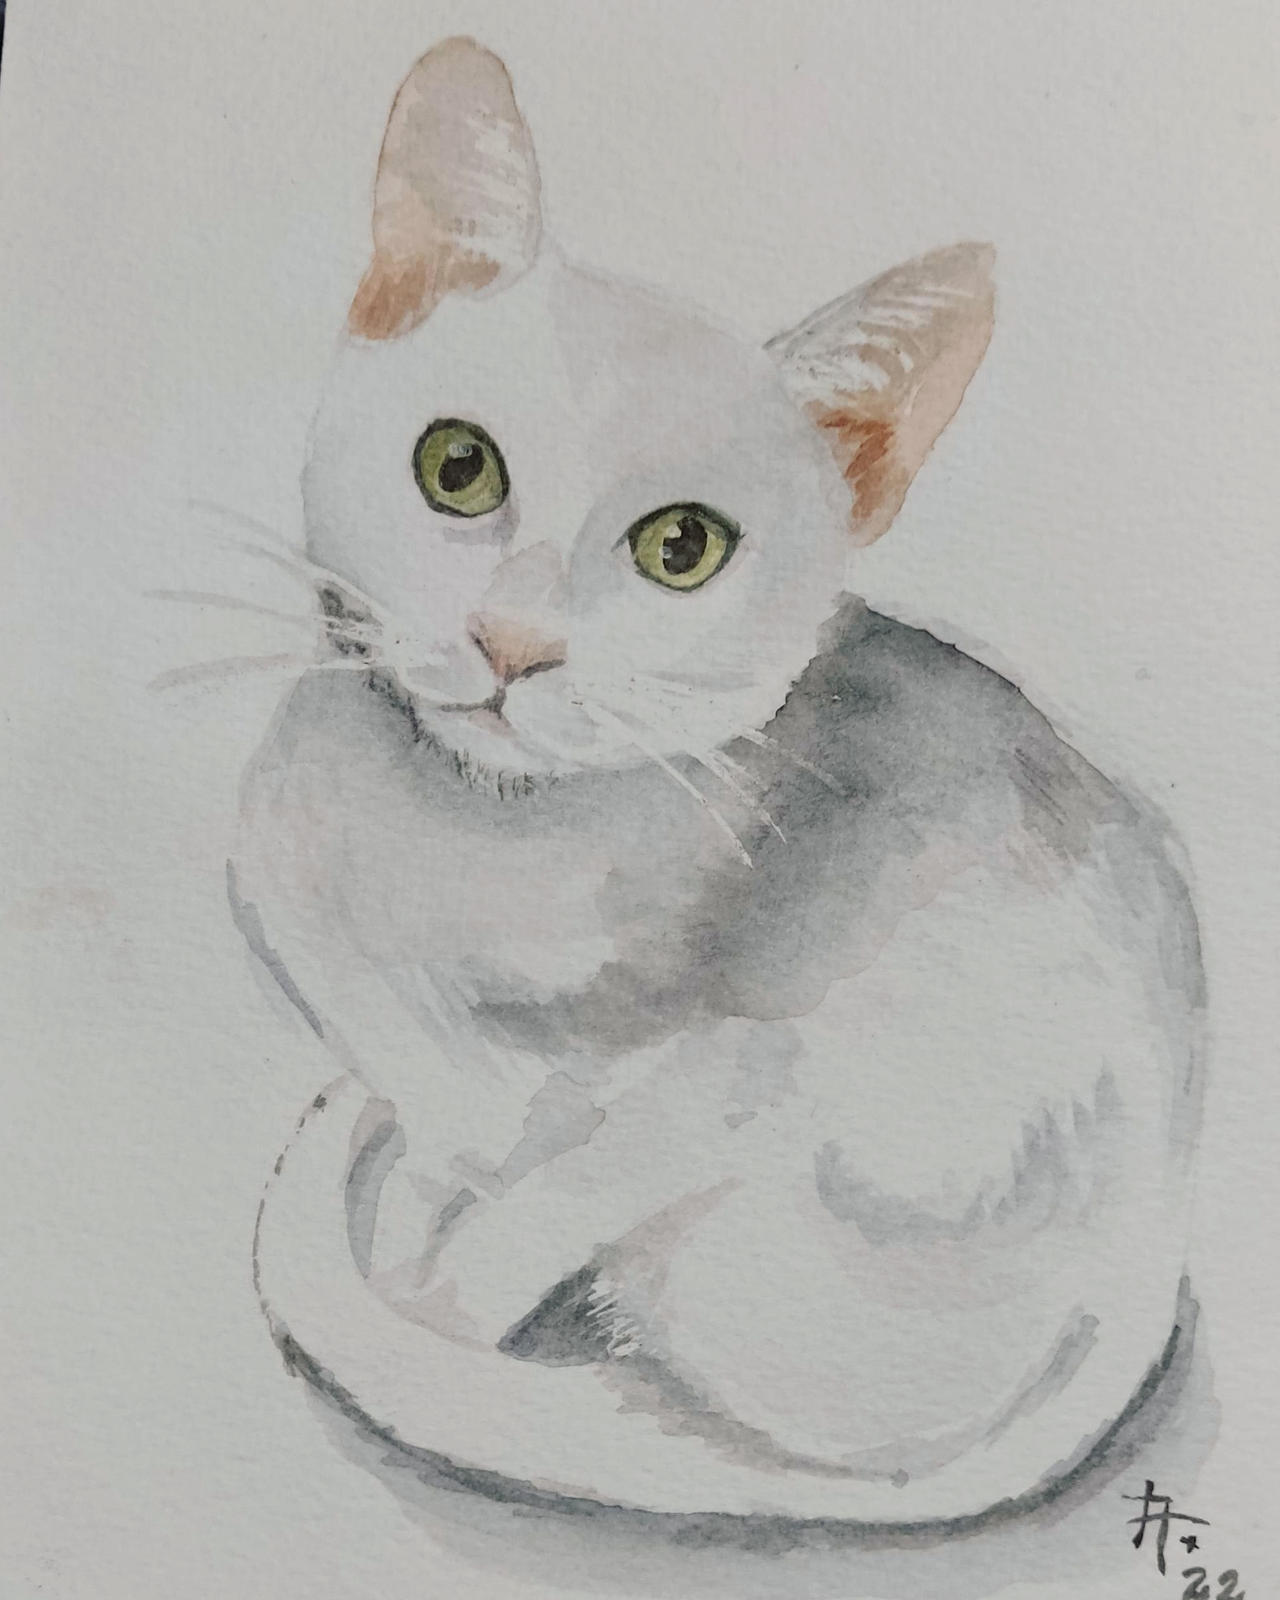 Gato cinza  Watercolor cat, Cat art, Watercolor pet portraits